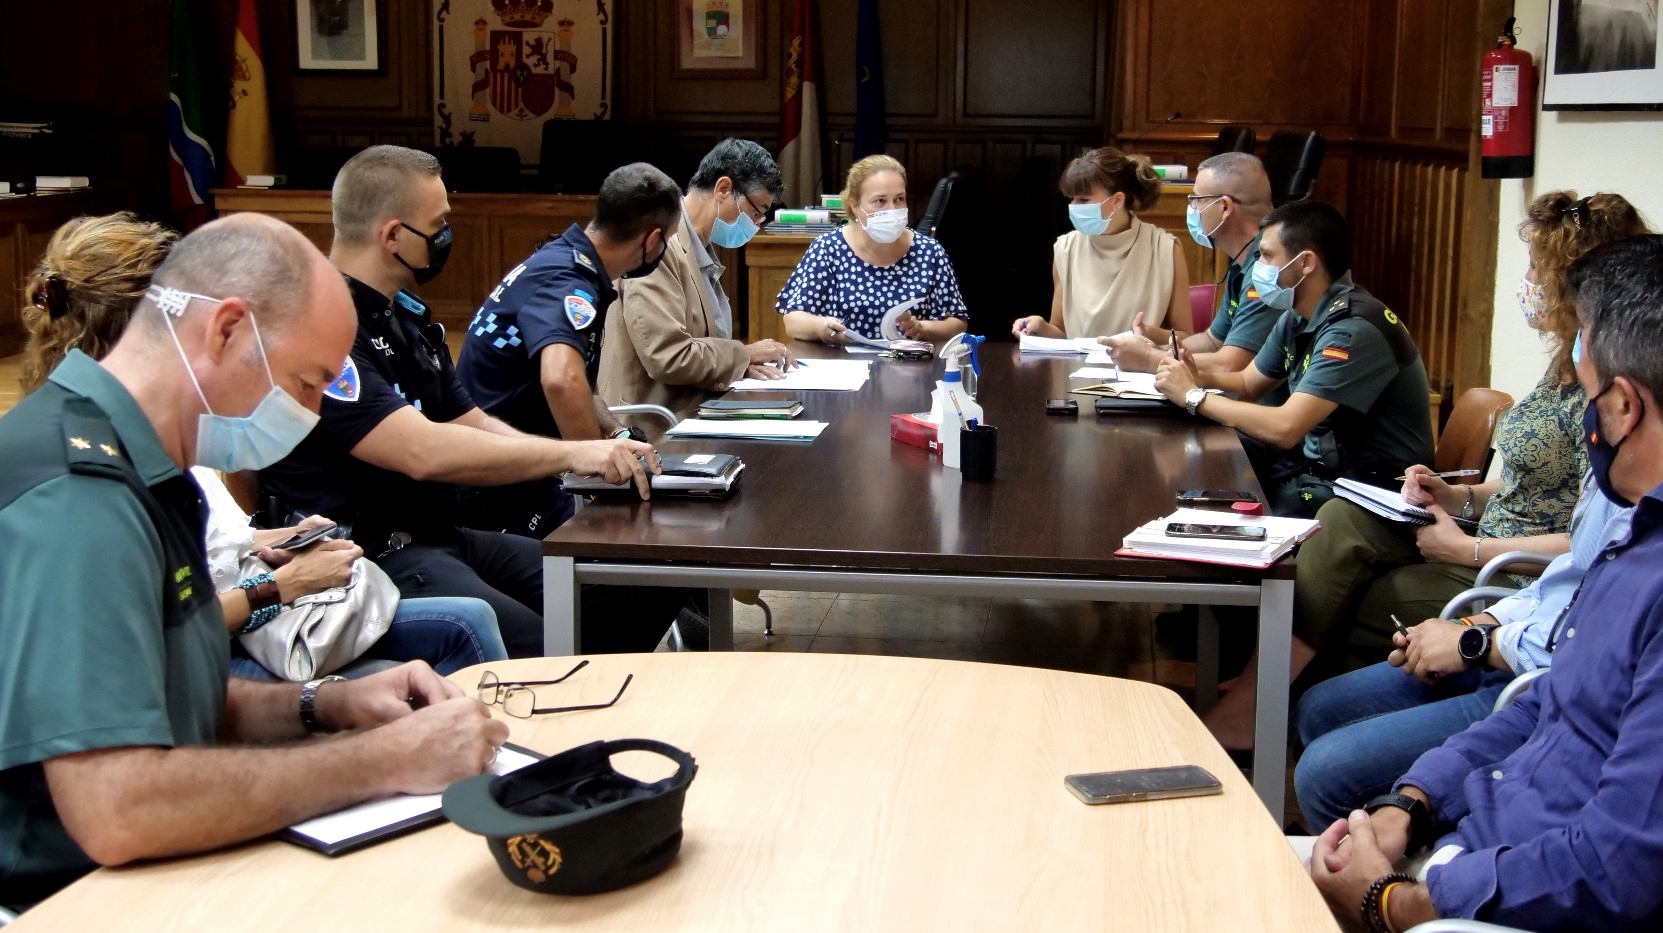 Reunión de la Junta Local de Seguridad de Alovera el 28 de julio de 2020.